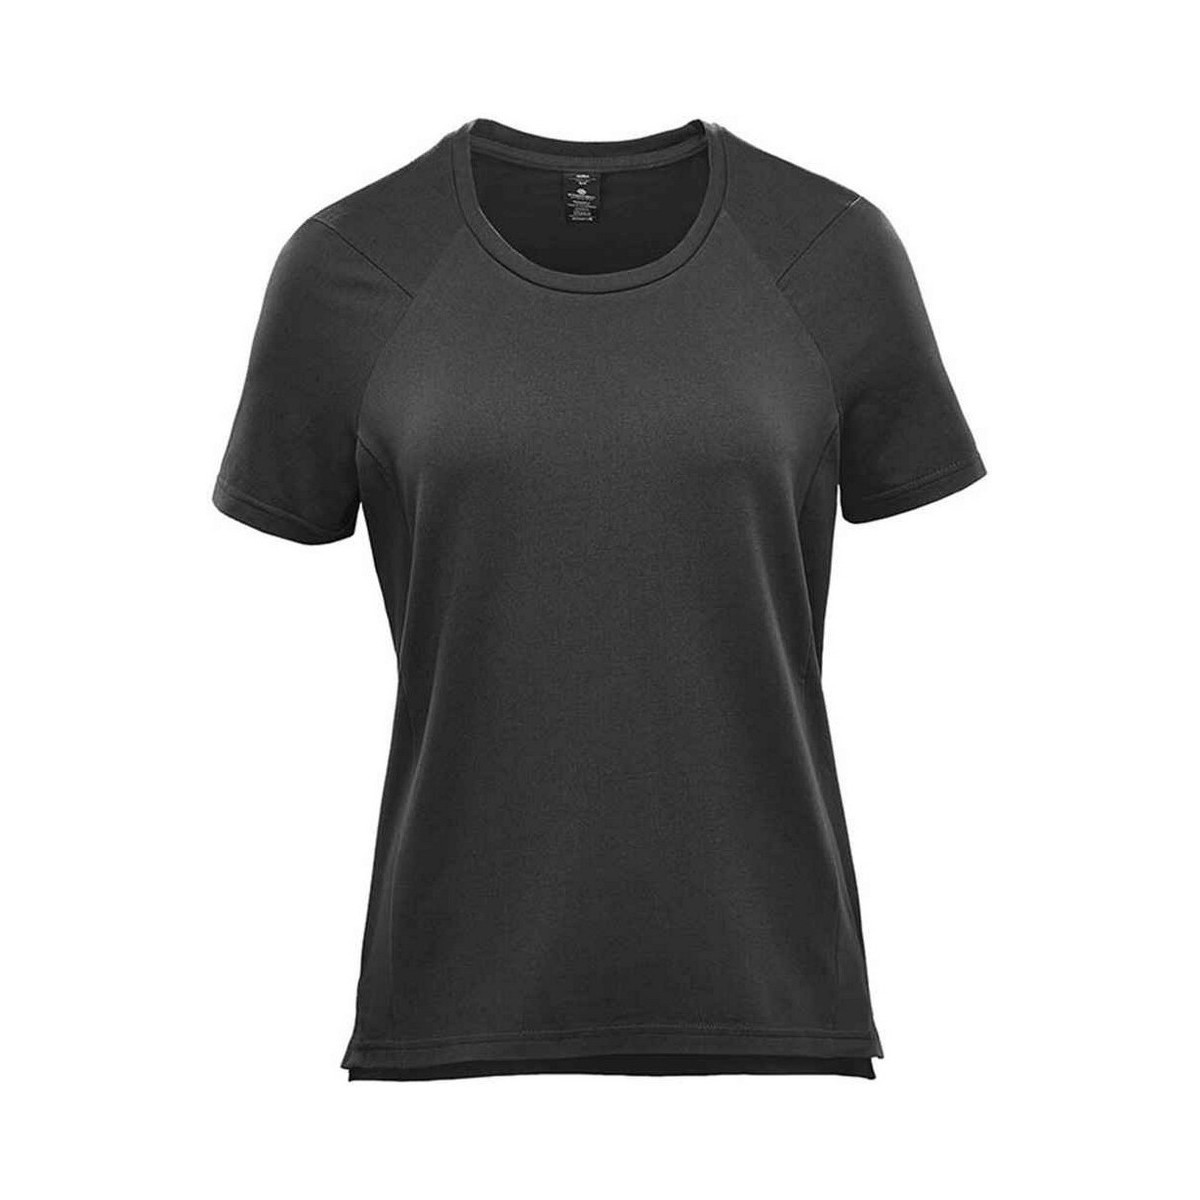 Abbigliamento Donna T-shirts a maniche lunghe Stormtech Tundra Grigio